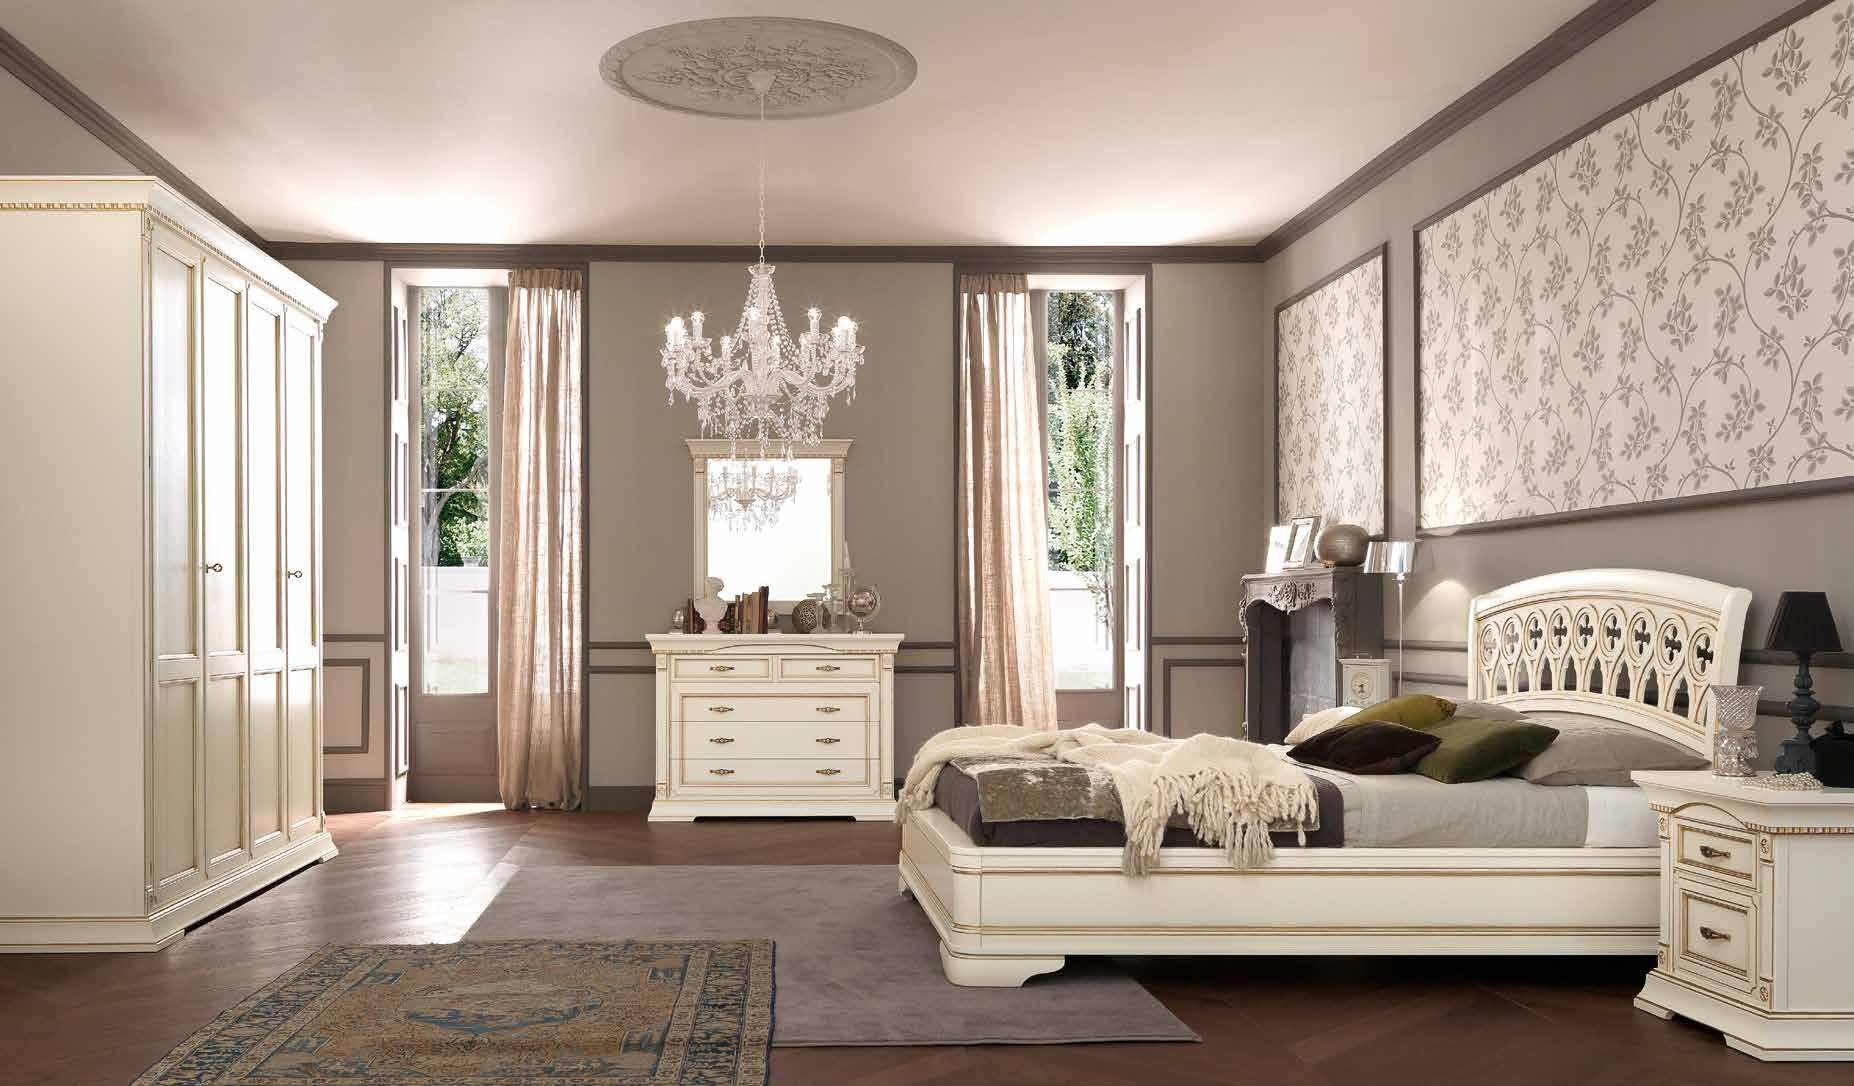 Кровать Prama Palazzo Ducale laccato, двуспальная, без изножья, цвет: белый с золотом, 180x200 см (71BO25LT)71BO25LT